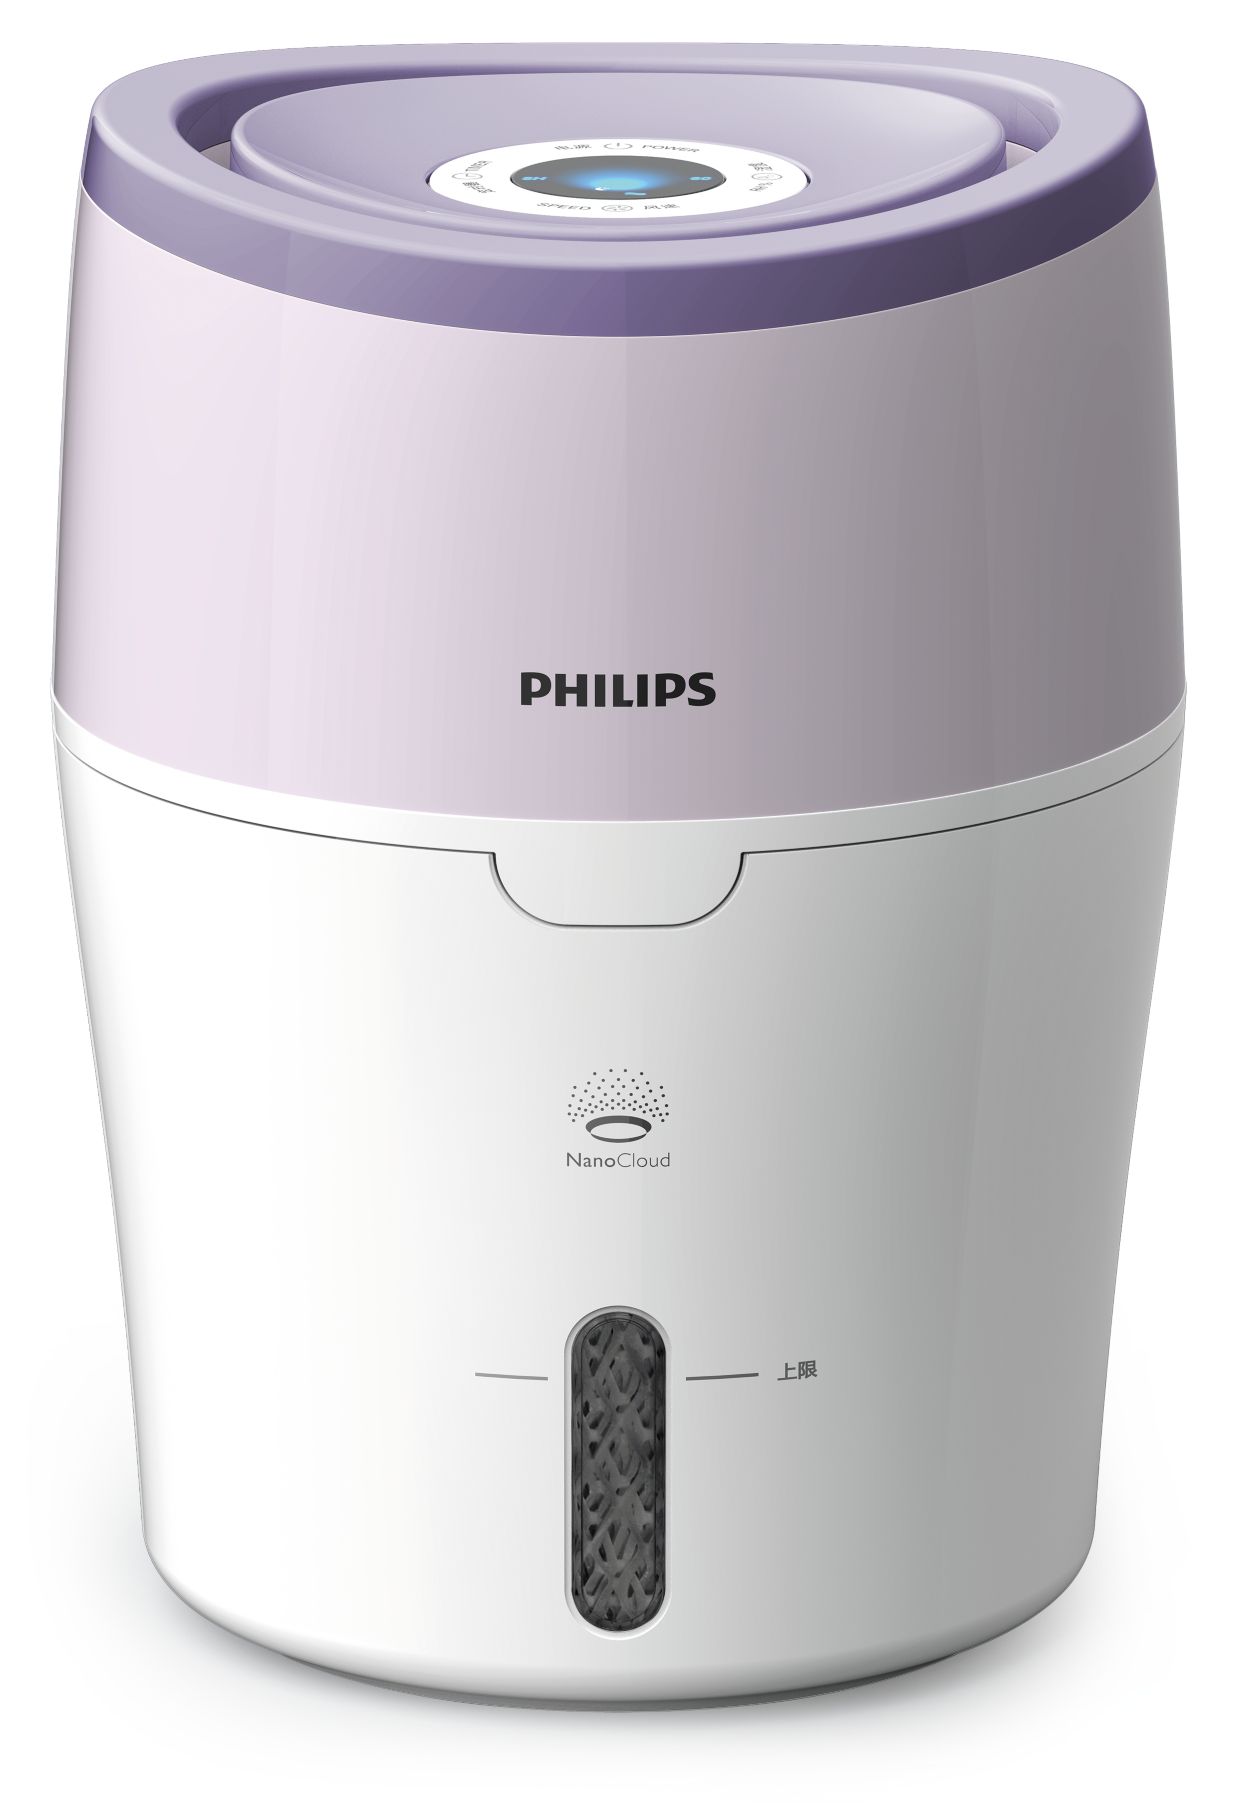  воздуха HU4802/01 | Philips